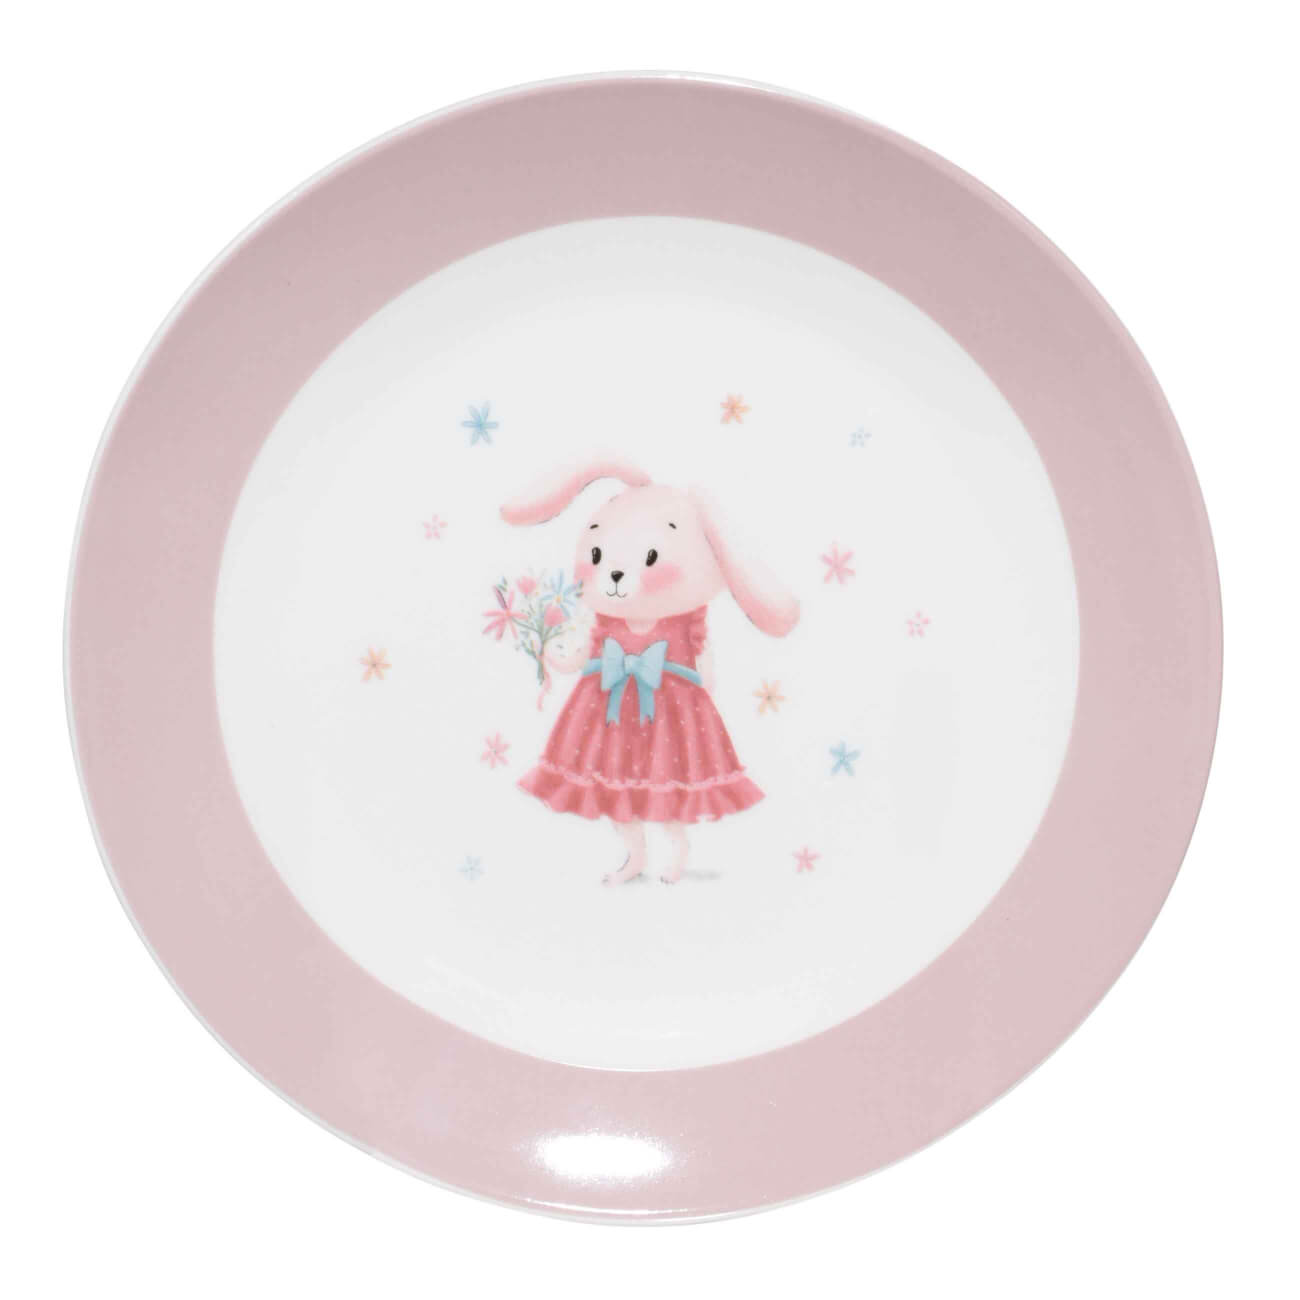 Тарелка закусочная, детская, 19 см, фарфор N, бело-розовая, Крольчиха с цветами, Ideas life тарелка детская из бамбука трехсекционная